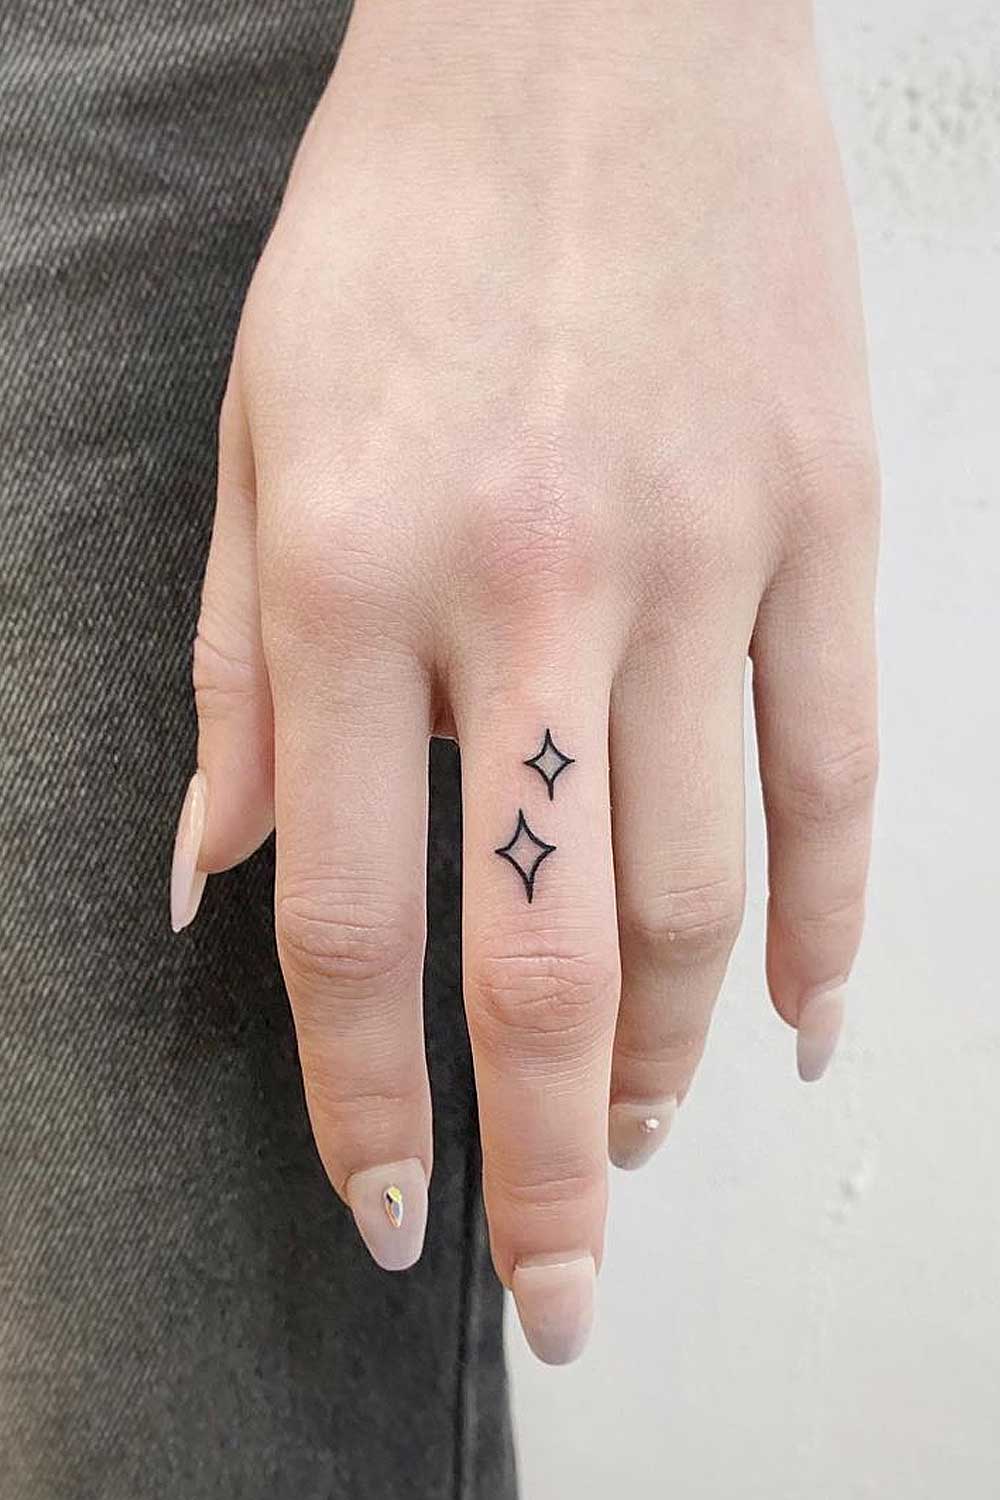 Small Finger Star Tattoos